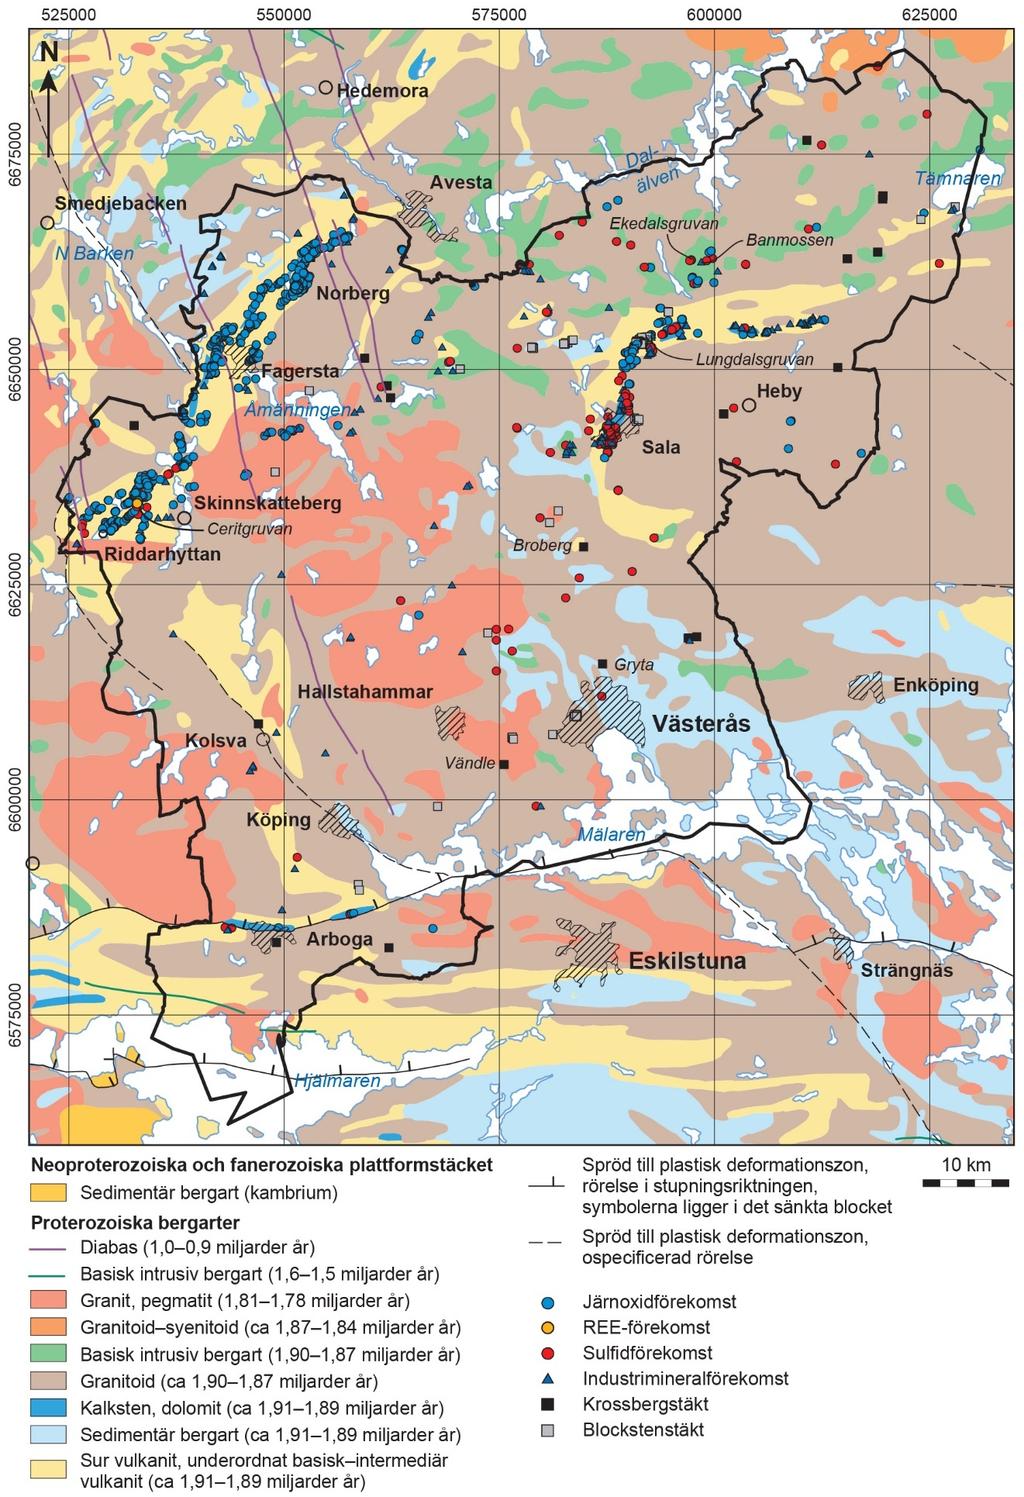 Figur 2. Berggrundsgeologisk karta över Västmanlands län med omgivning (modifierad från 1:M berggrundsgeologisk kartdatabas och Mineralresursdatabasen, SGU).